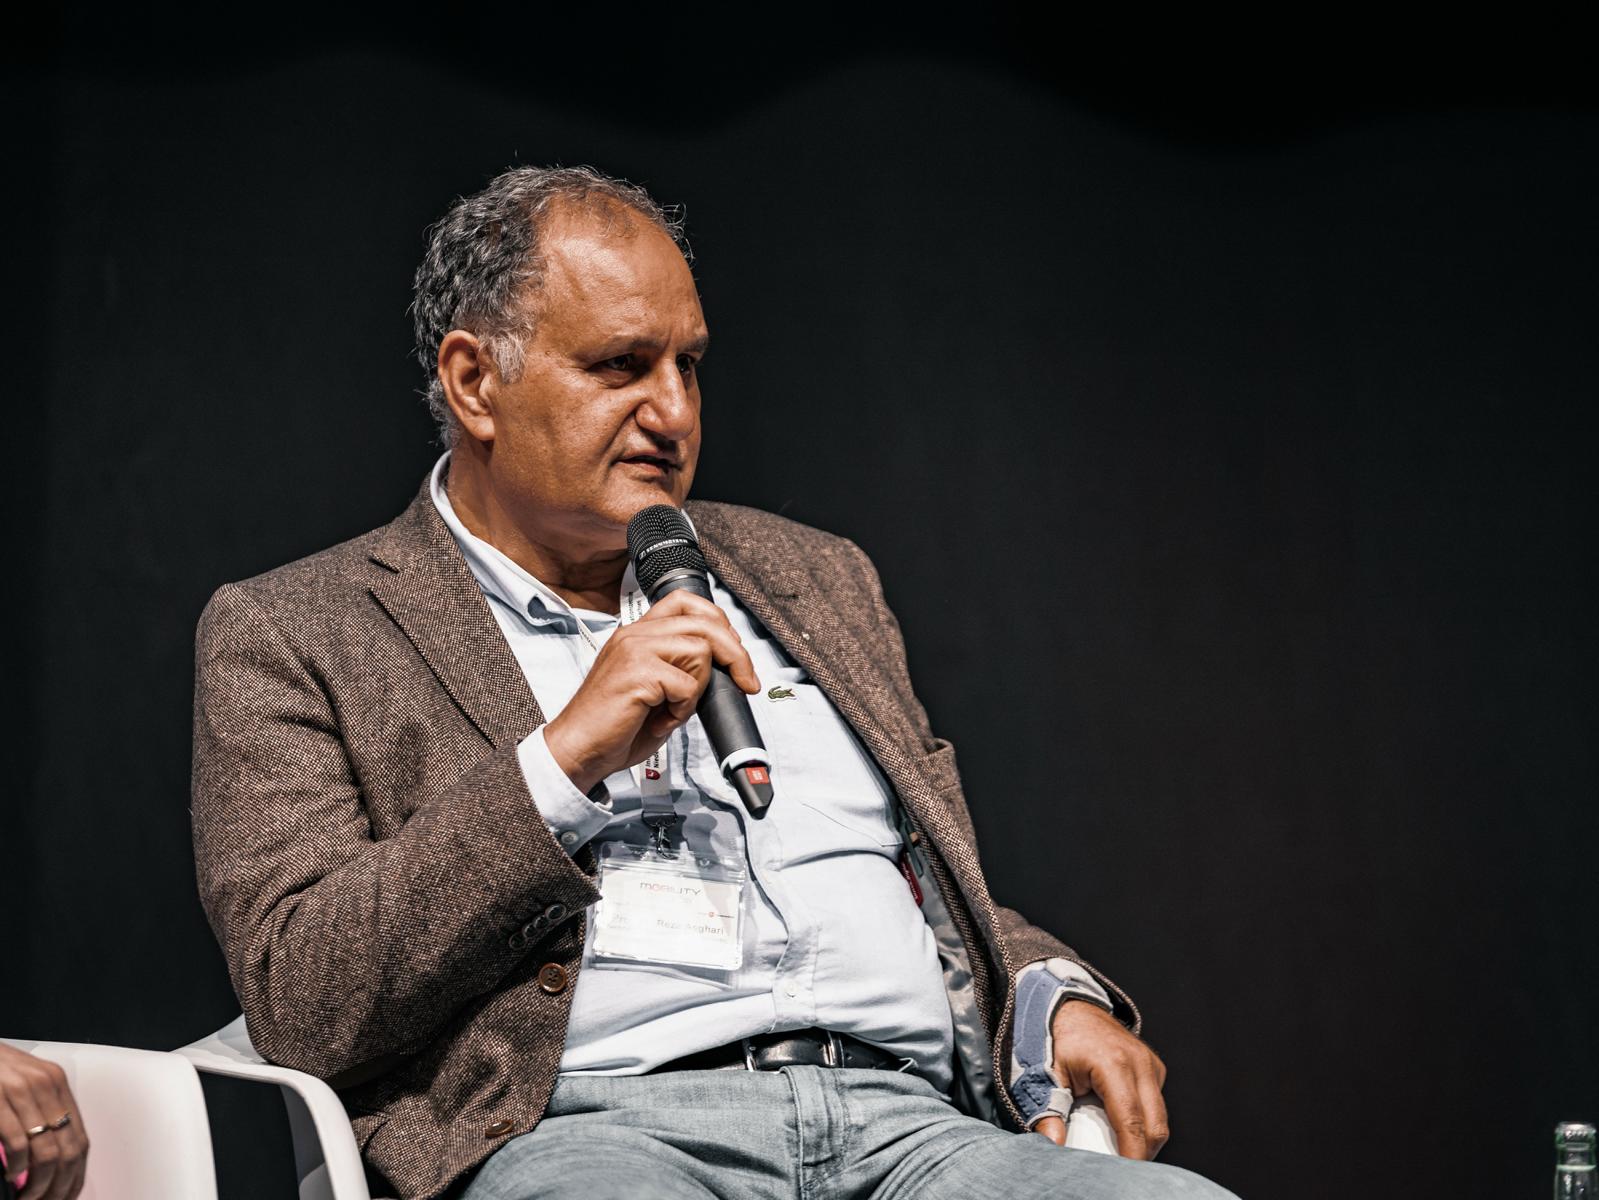 Prof. Reza Asghari von der TU Braunschweig sitzt auf der Bühne in einem weißen Stuhl und spricht in ein Mikrophon, das er in der Hand vor seinen Mund hält.